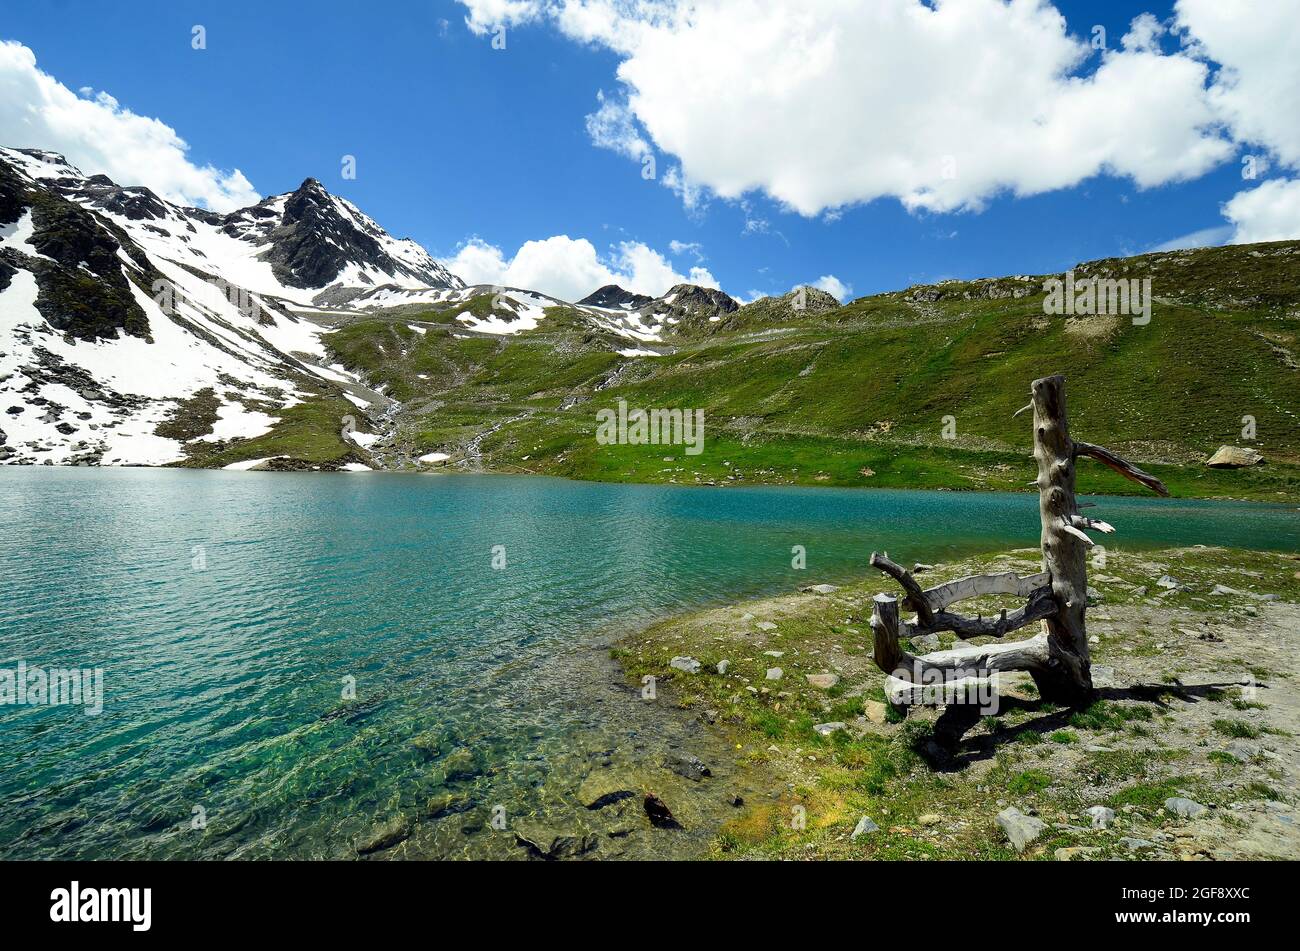 Autriche, Tyrol, lac appelé Weiss-See à Kaunertal, Alpes autrichiennes Banque D'Images